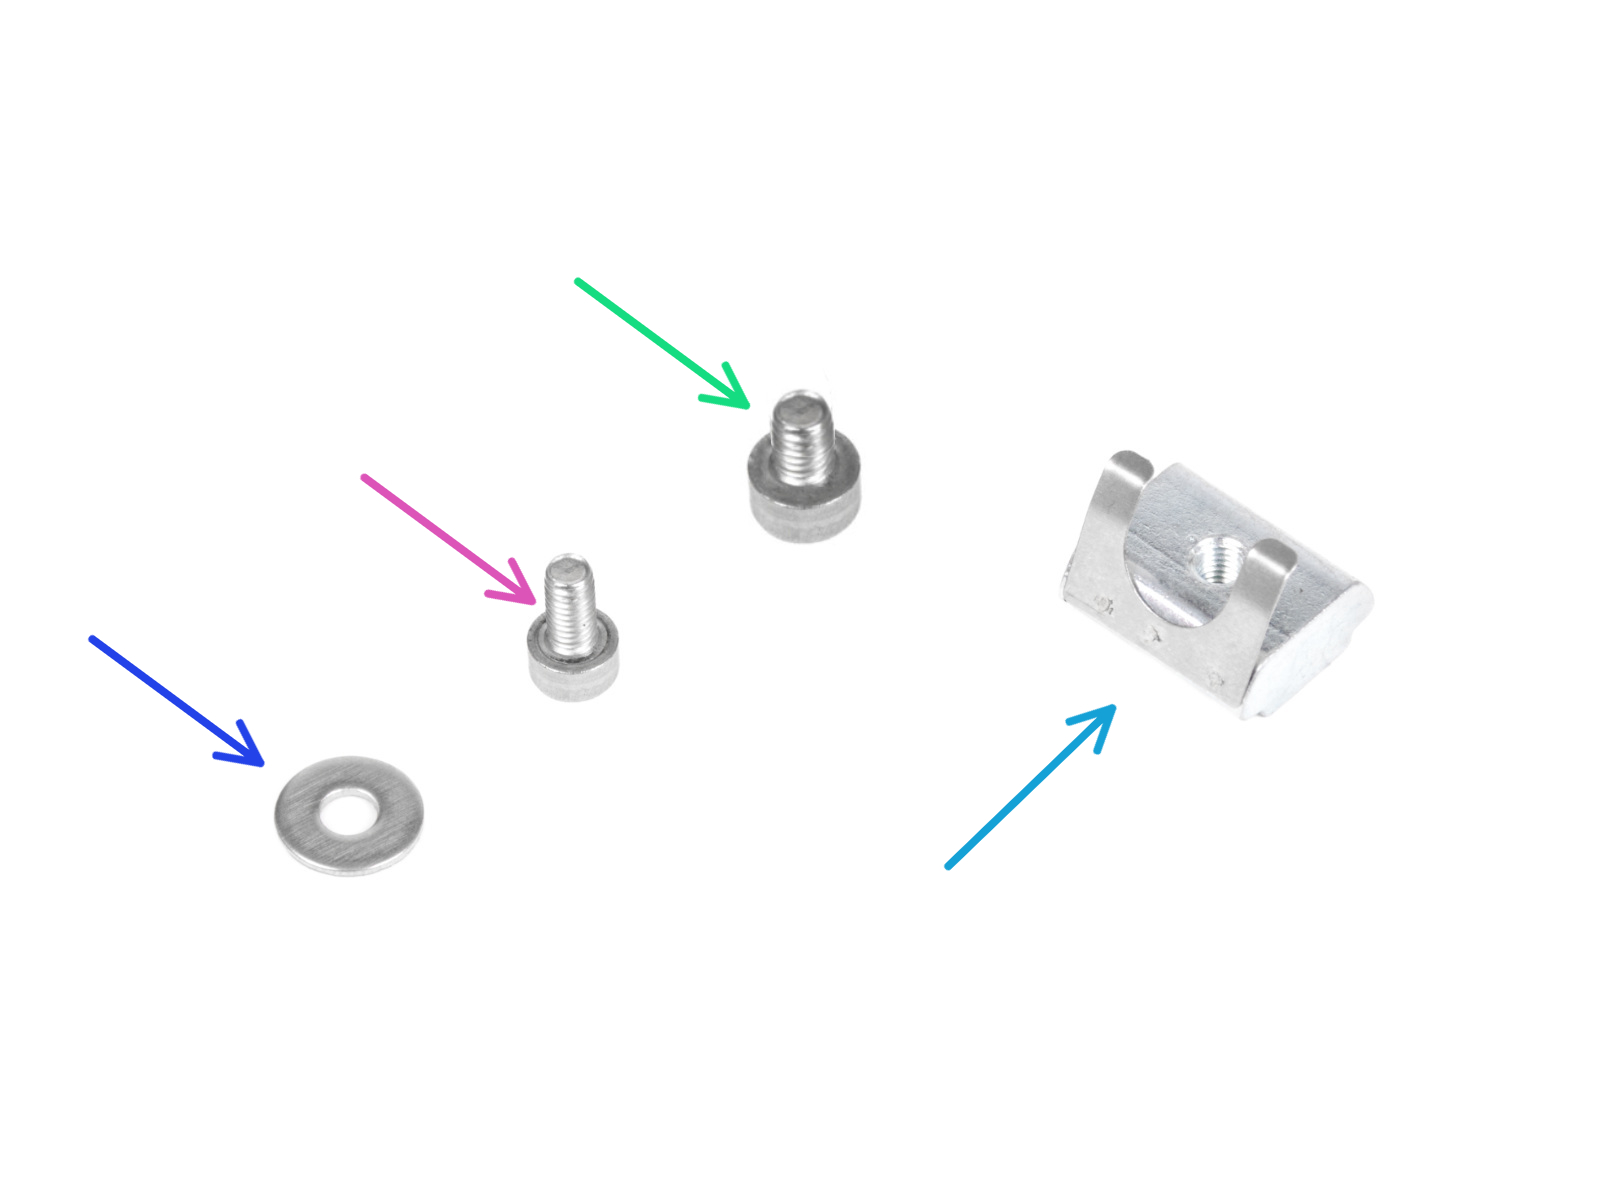 PSU - PE cable (Silver PSU): parts preparation